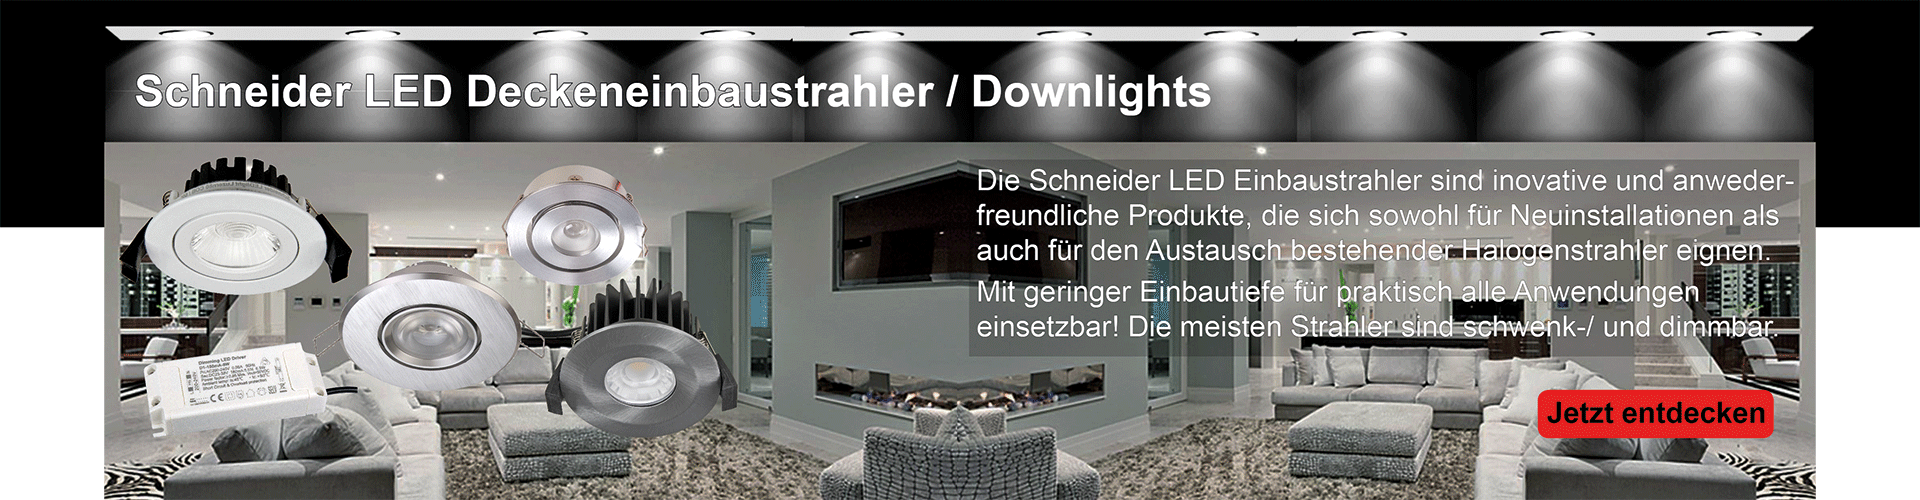 Schneider LED Deckeneinbaustrahler / Downlights